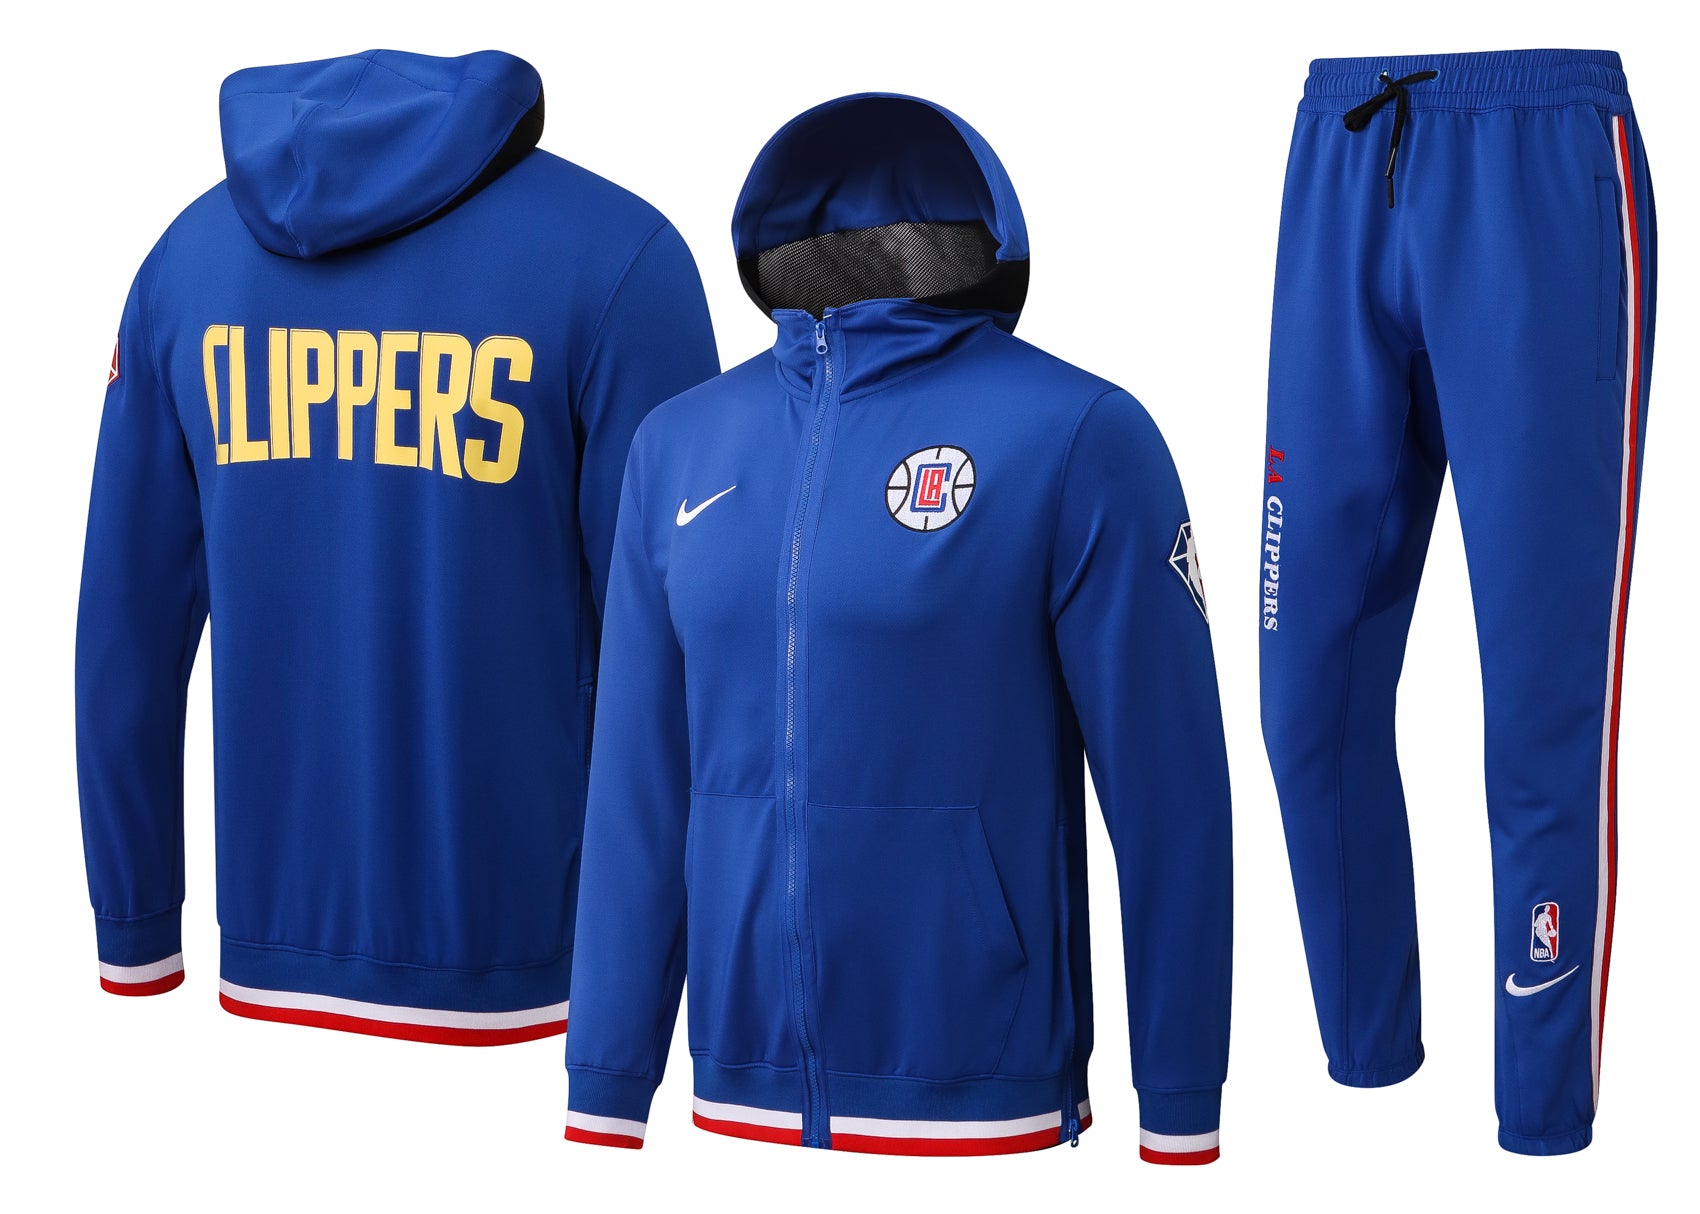 Clippers blue suit